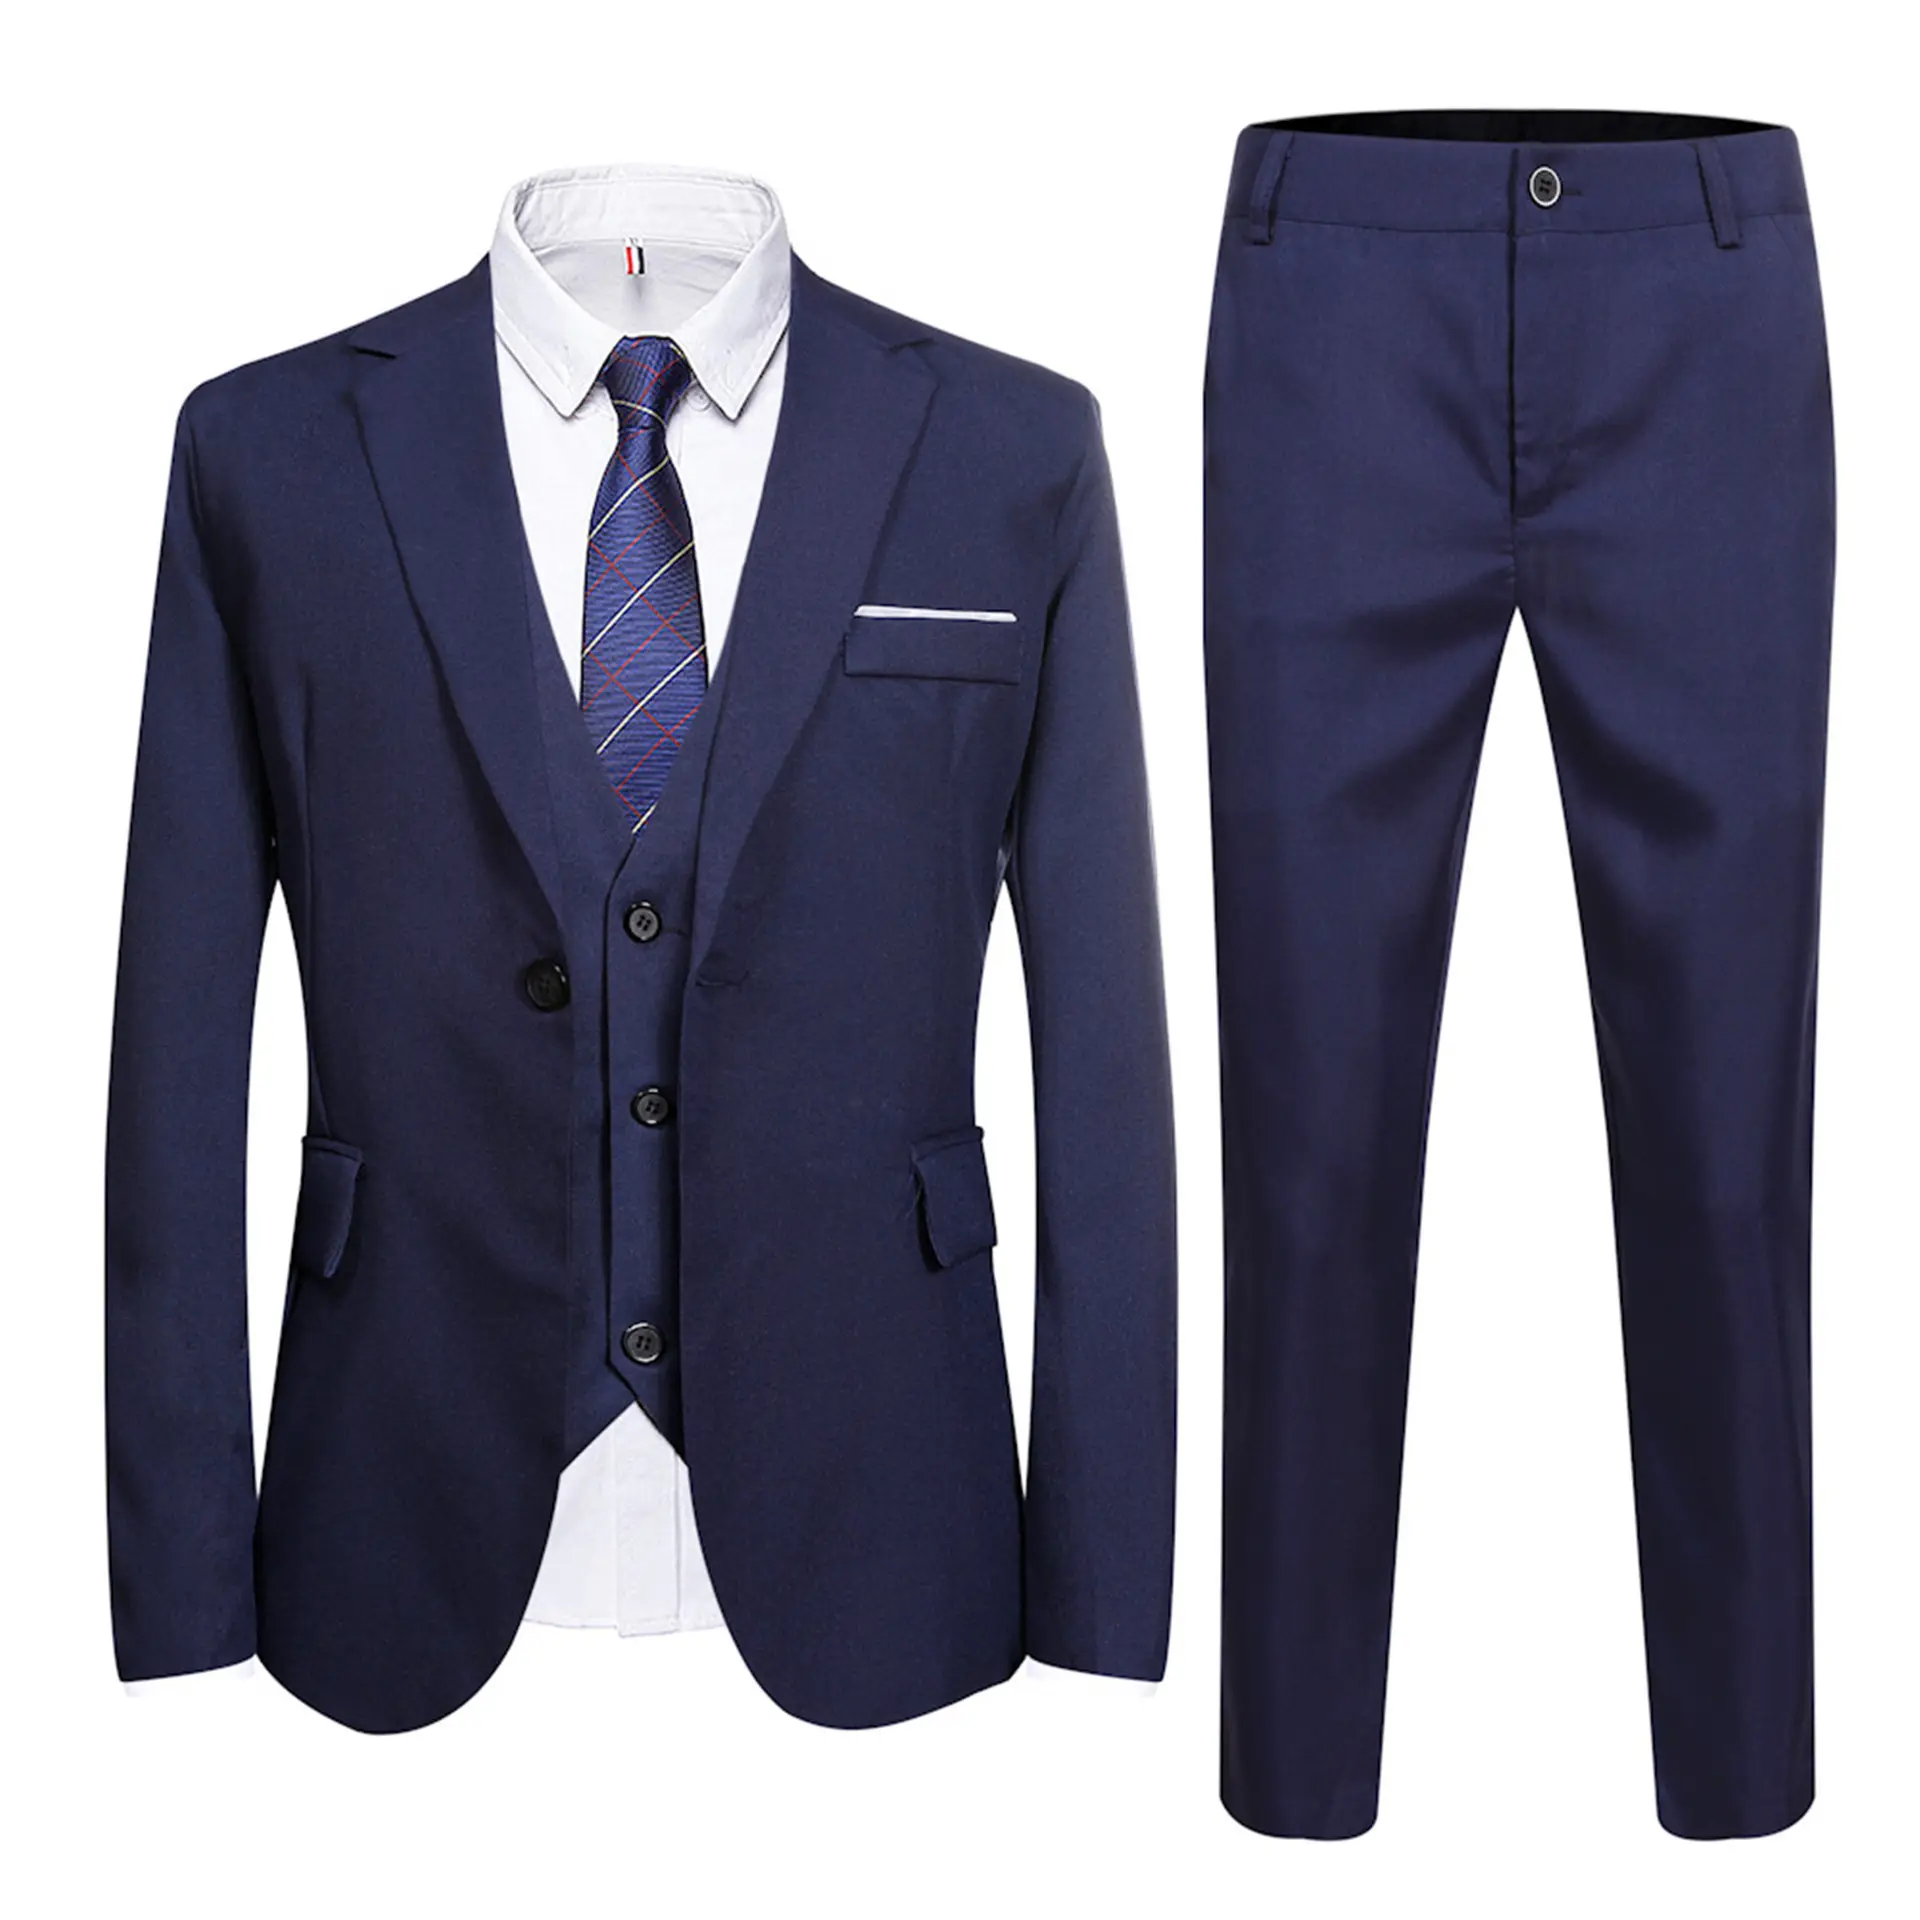 Wholesale Business Men's Suits & Blazer